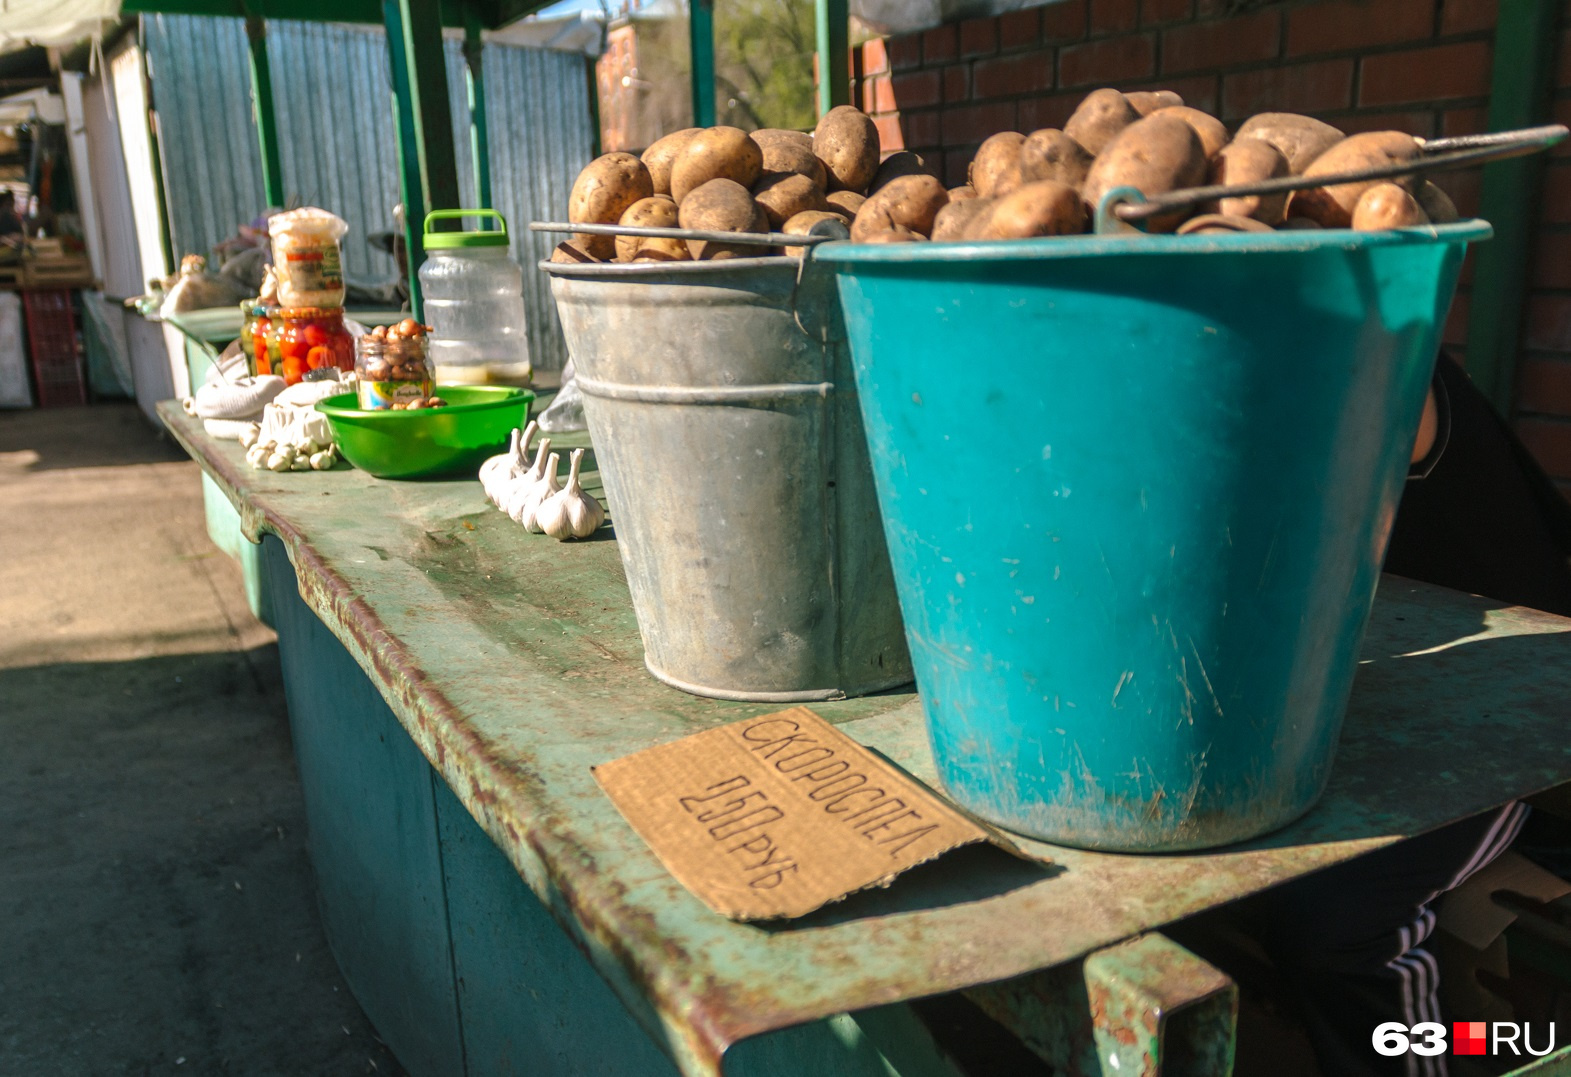 Цена картофеля на ярмарках составила 20–25 рублей